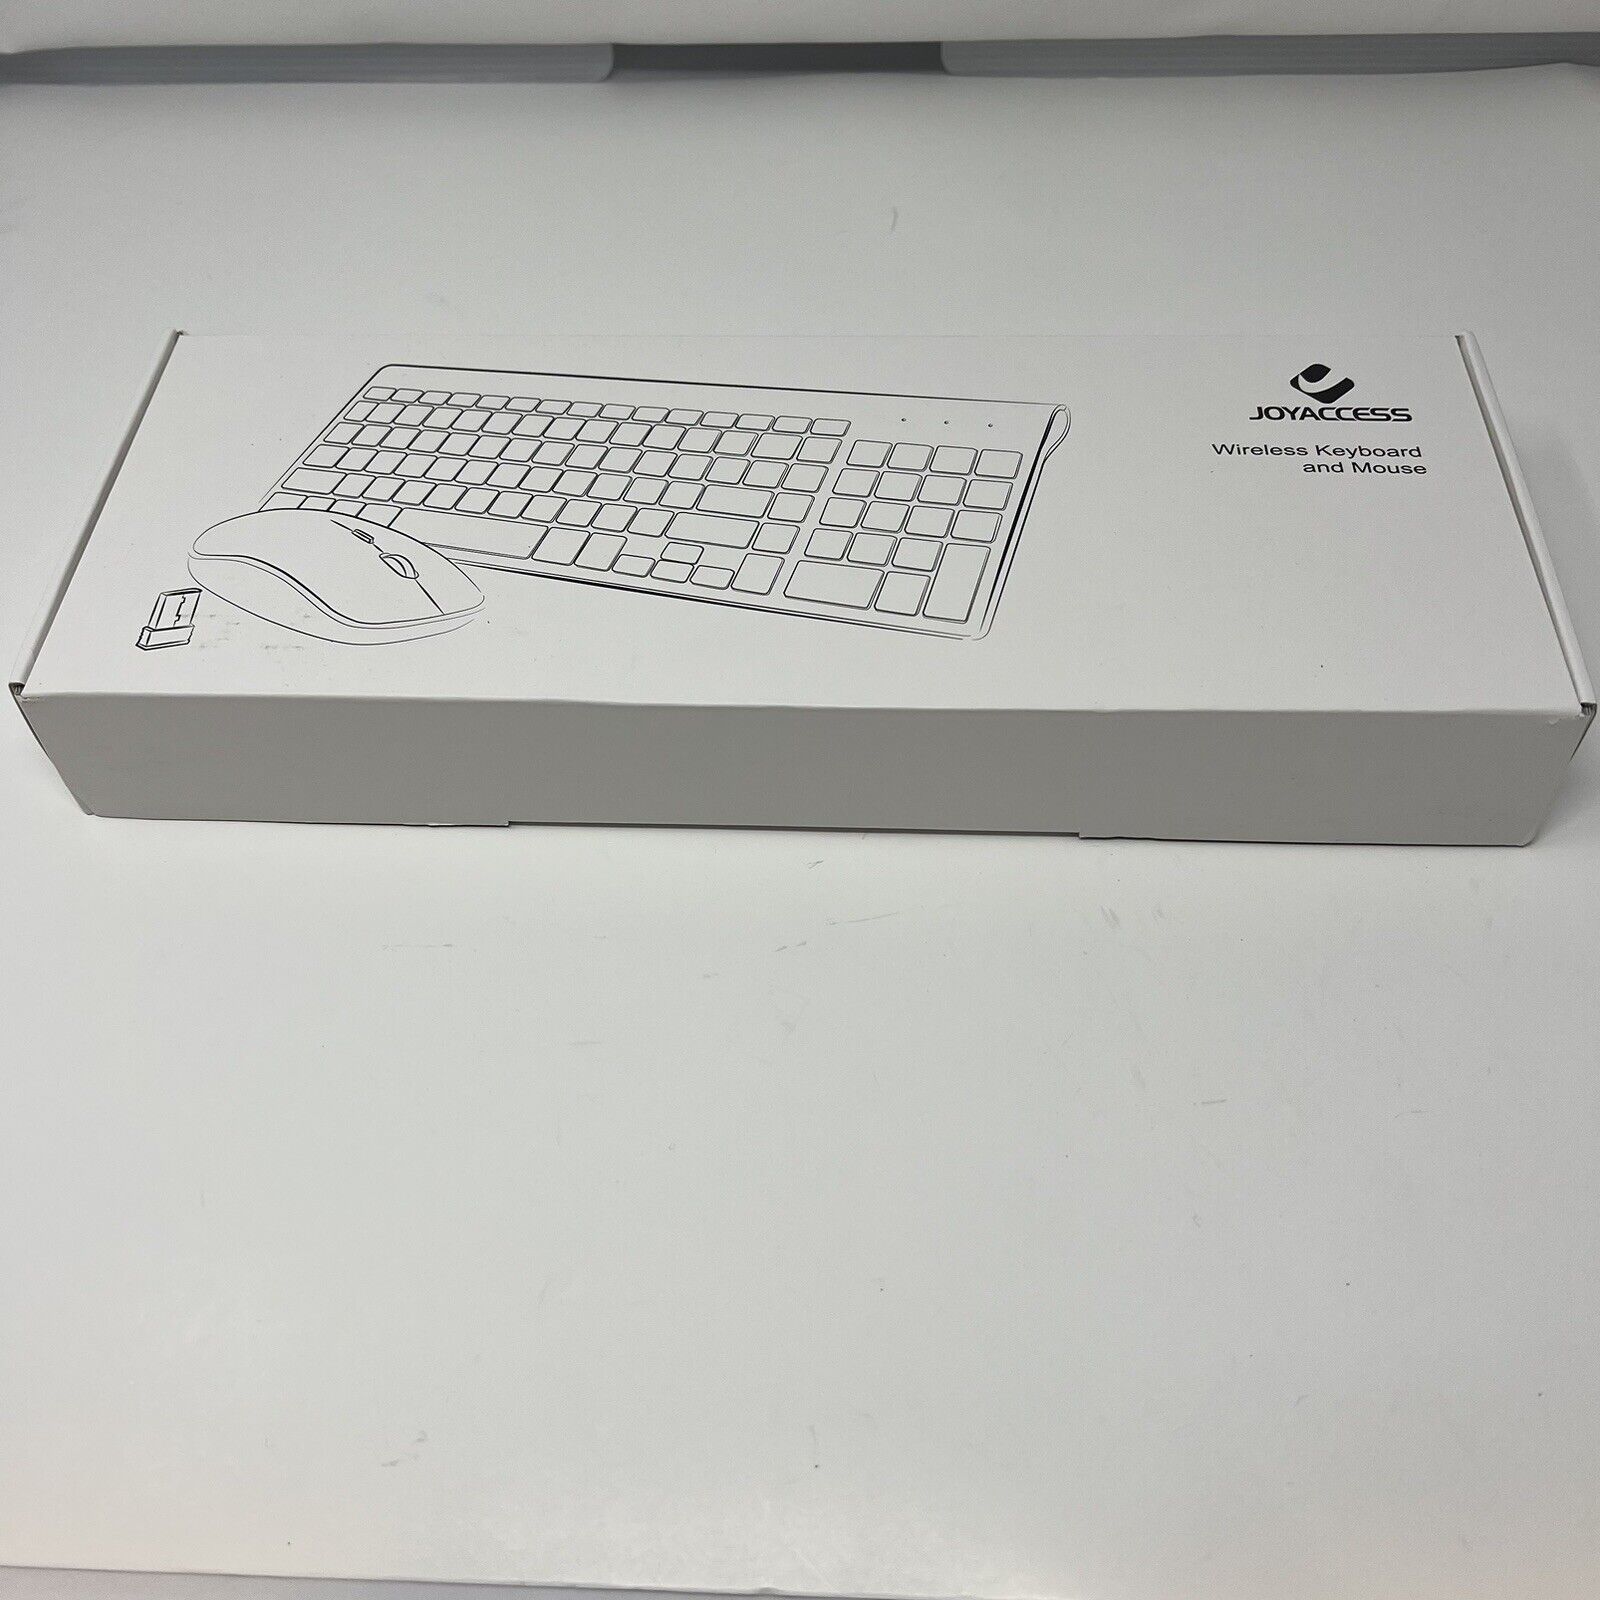 Wireless Keyboard and Mouse,J JOYACCESS 2.4G white